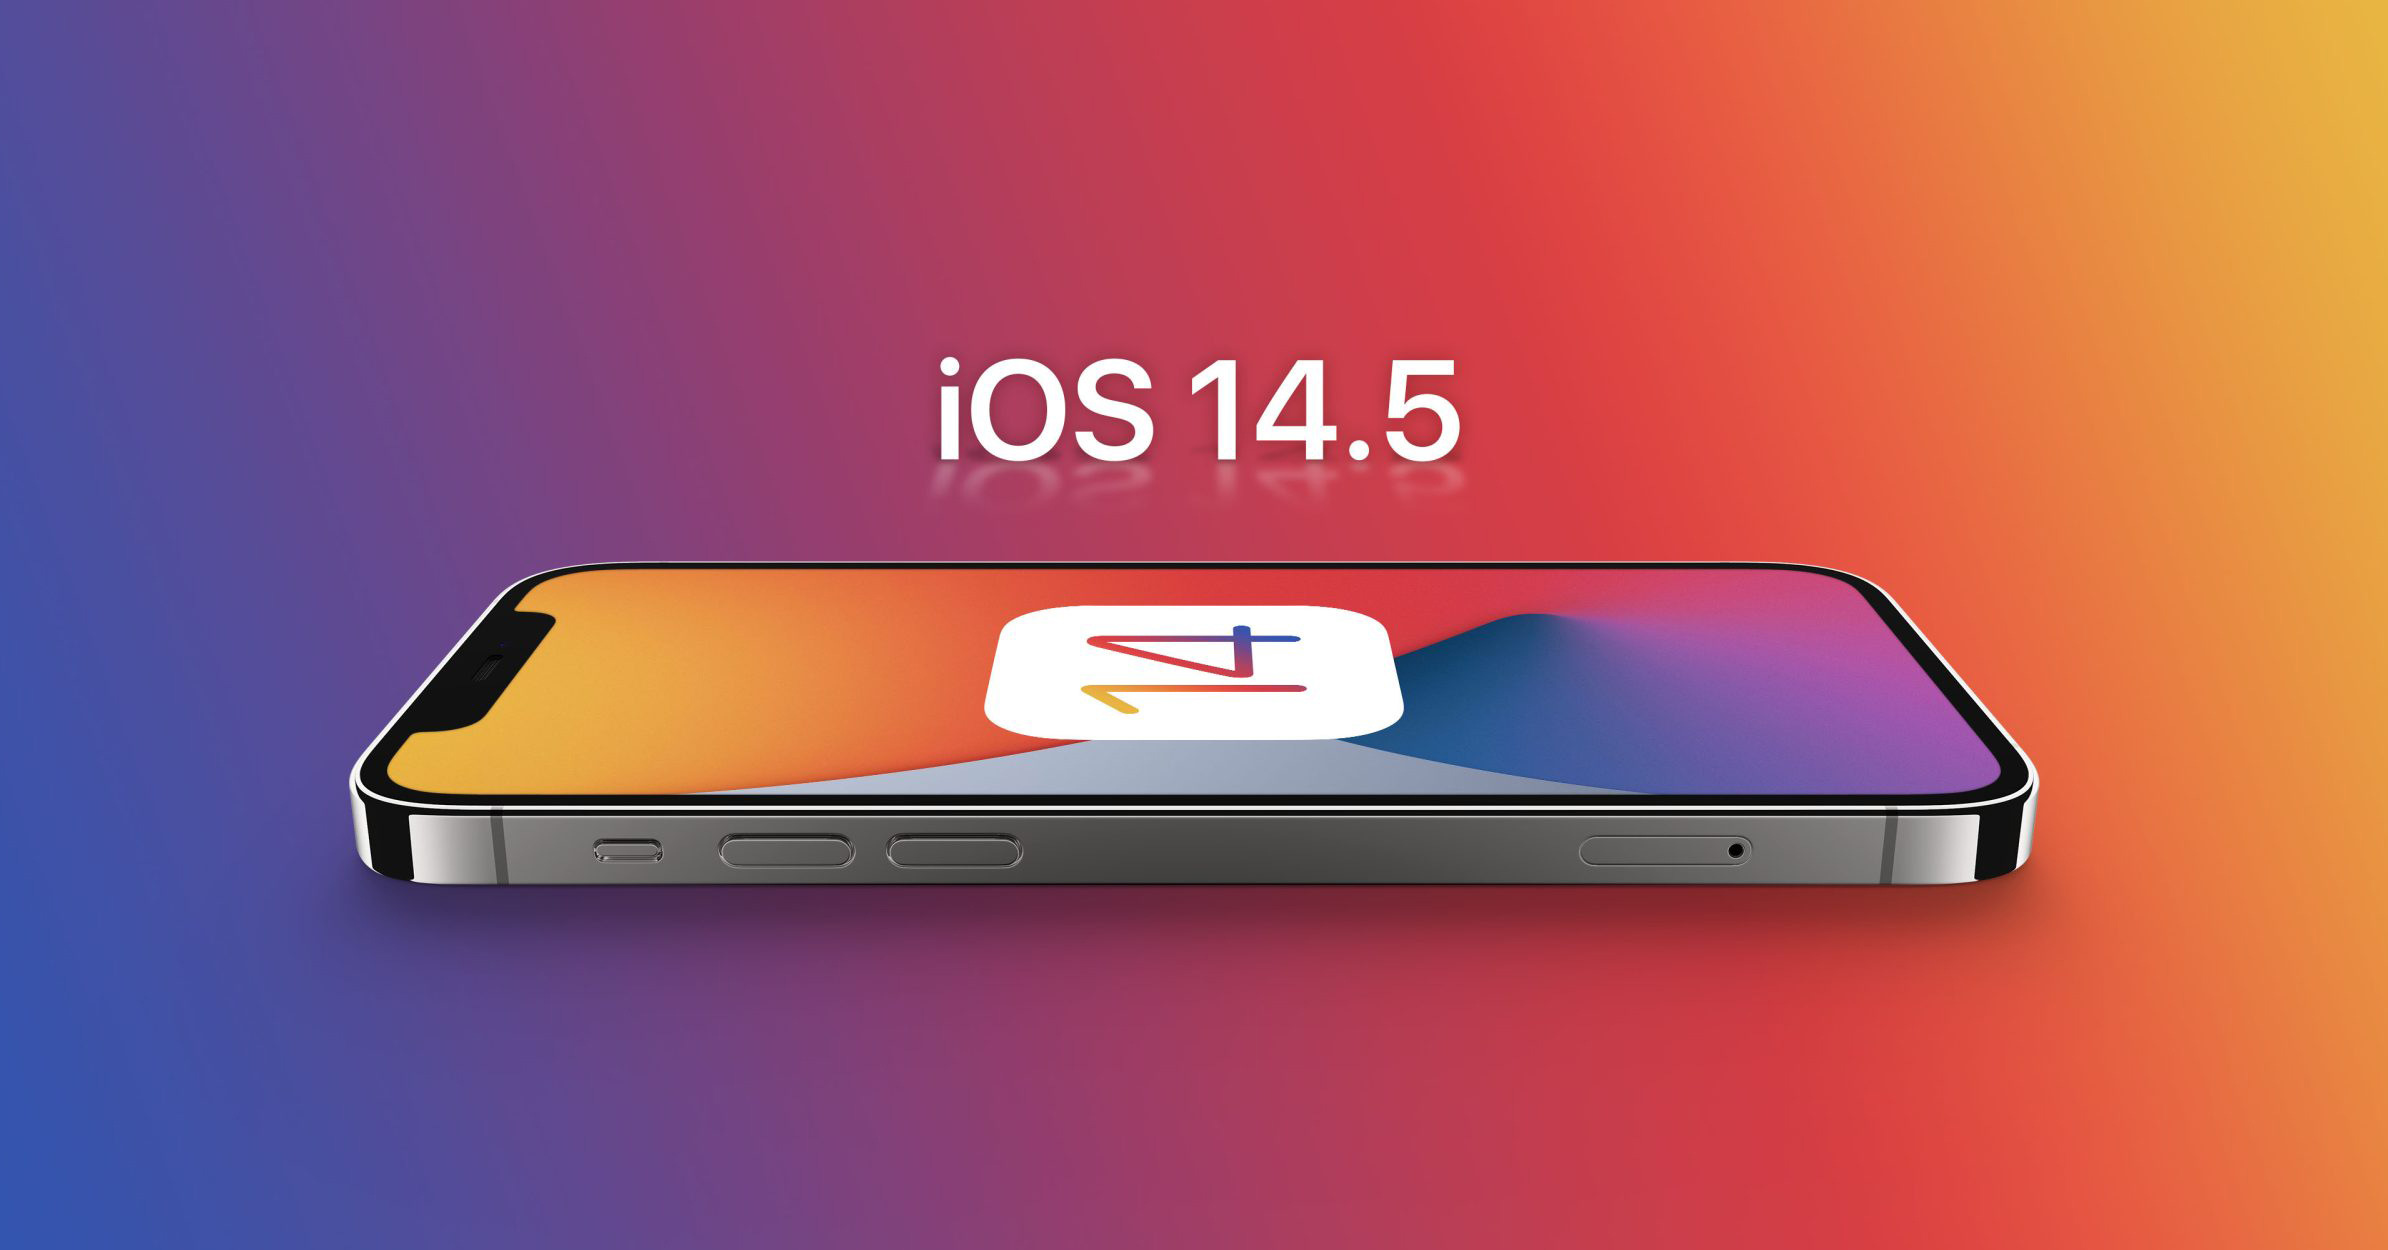 Iphone cập nhật iOS 14.5.1 nhiều lỗi cho người dùng